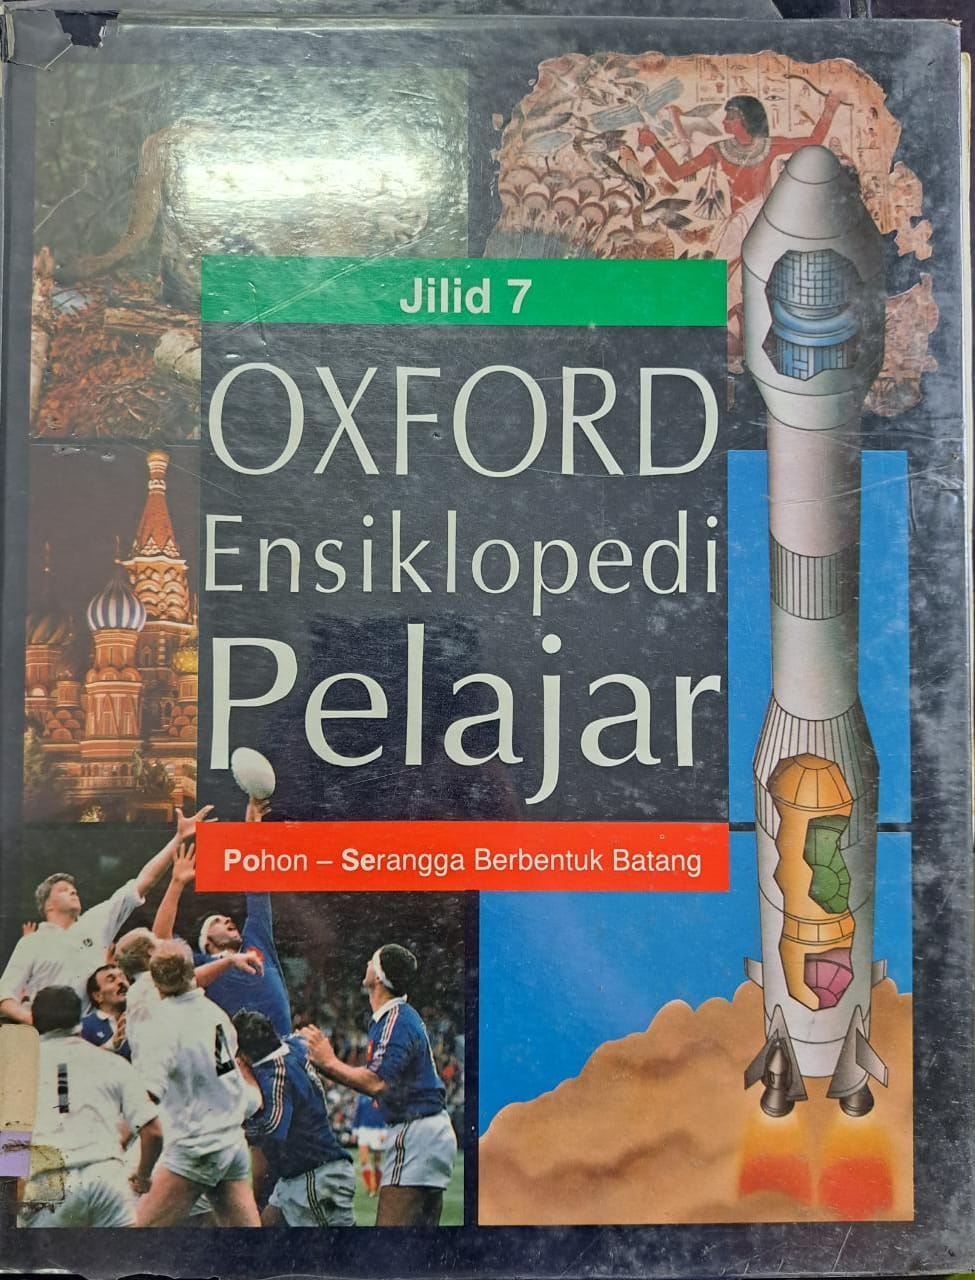 Oxford ensiklopedi pelajar :  Jilid 7 pohon-serangga berbentuk batang